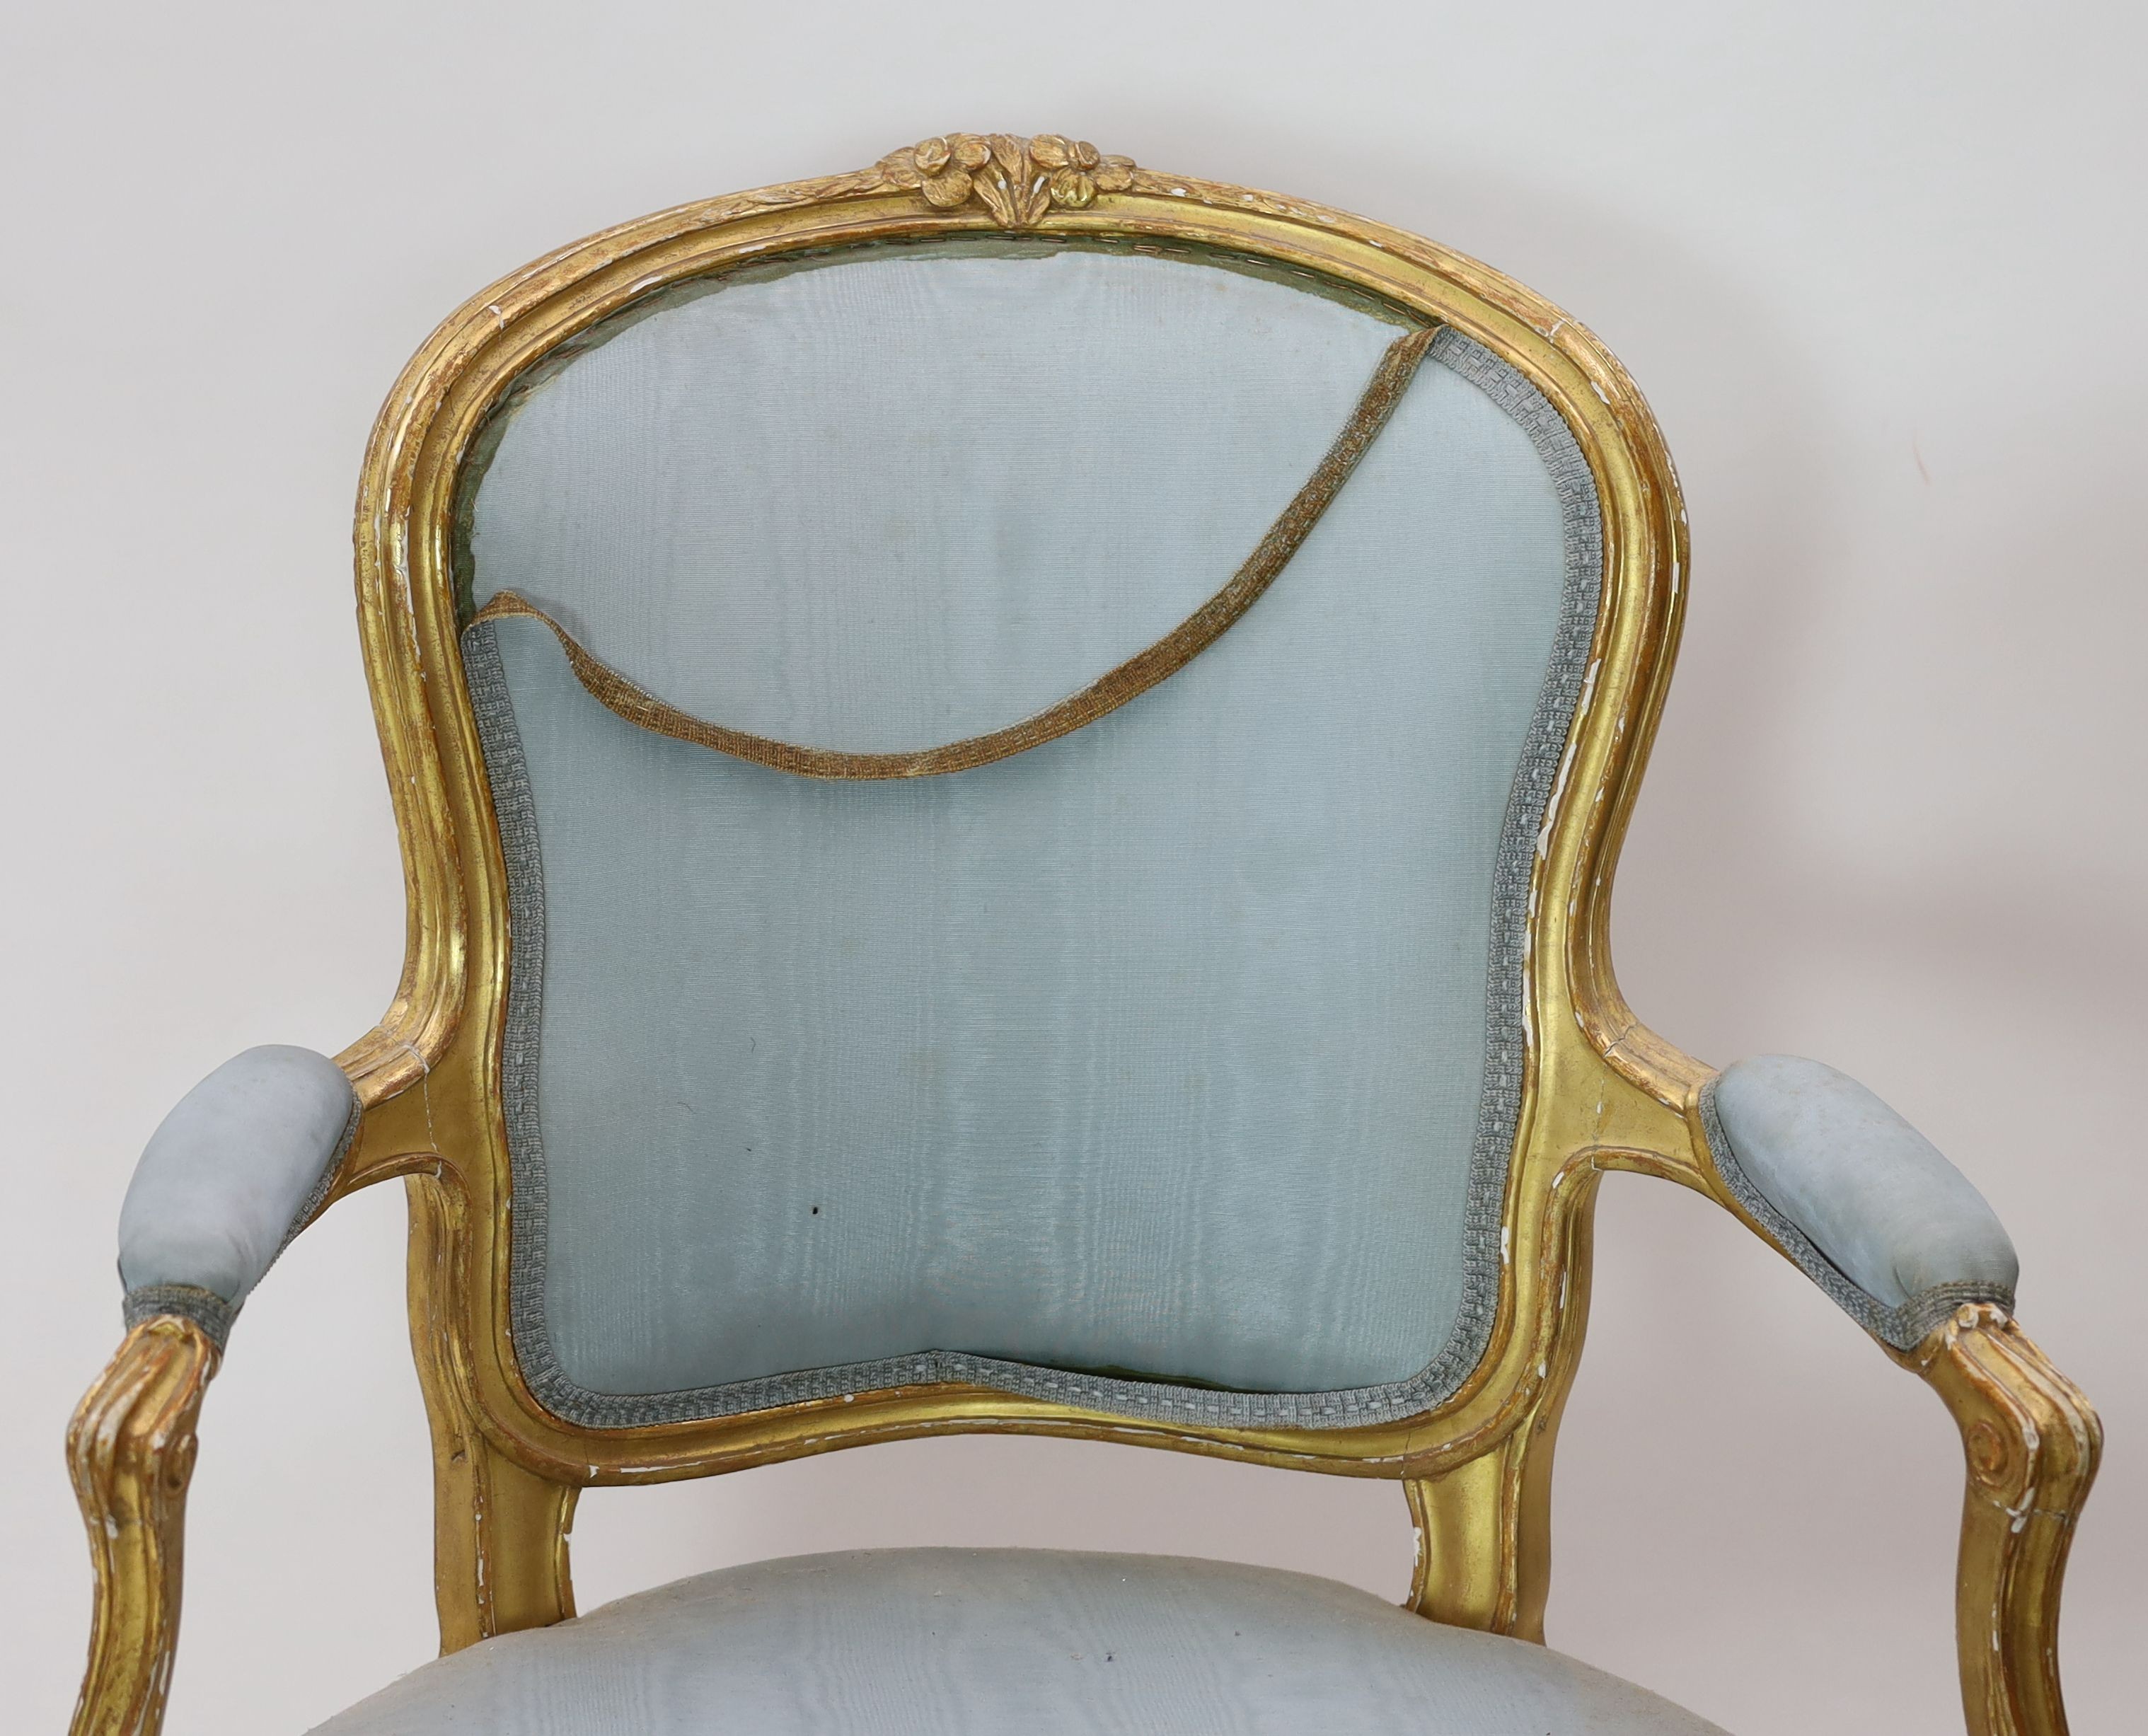 A set of four Louis XVI carved giltwood fauteuils, W.65cm D.62cm H.93cm